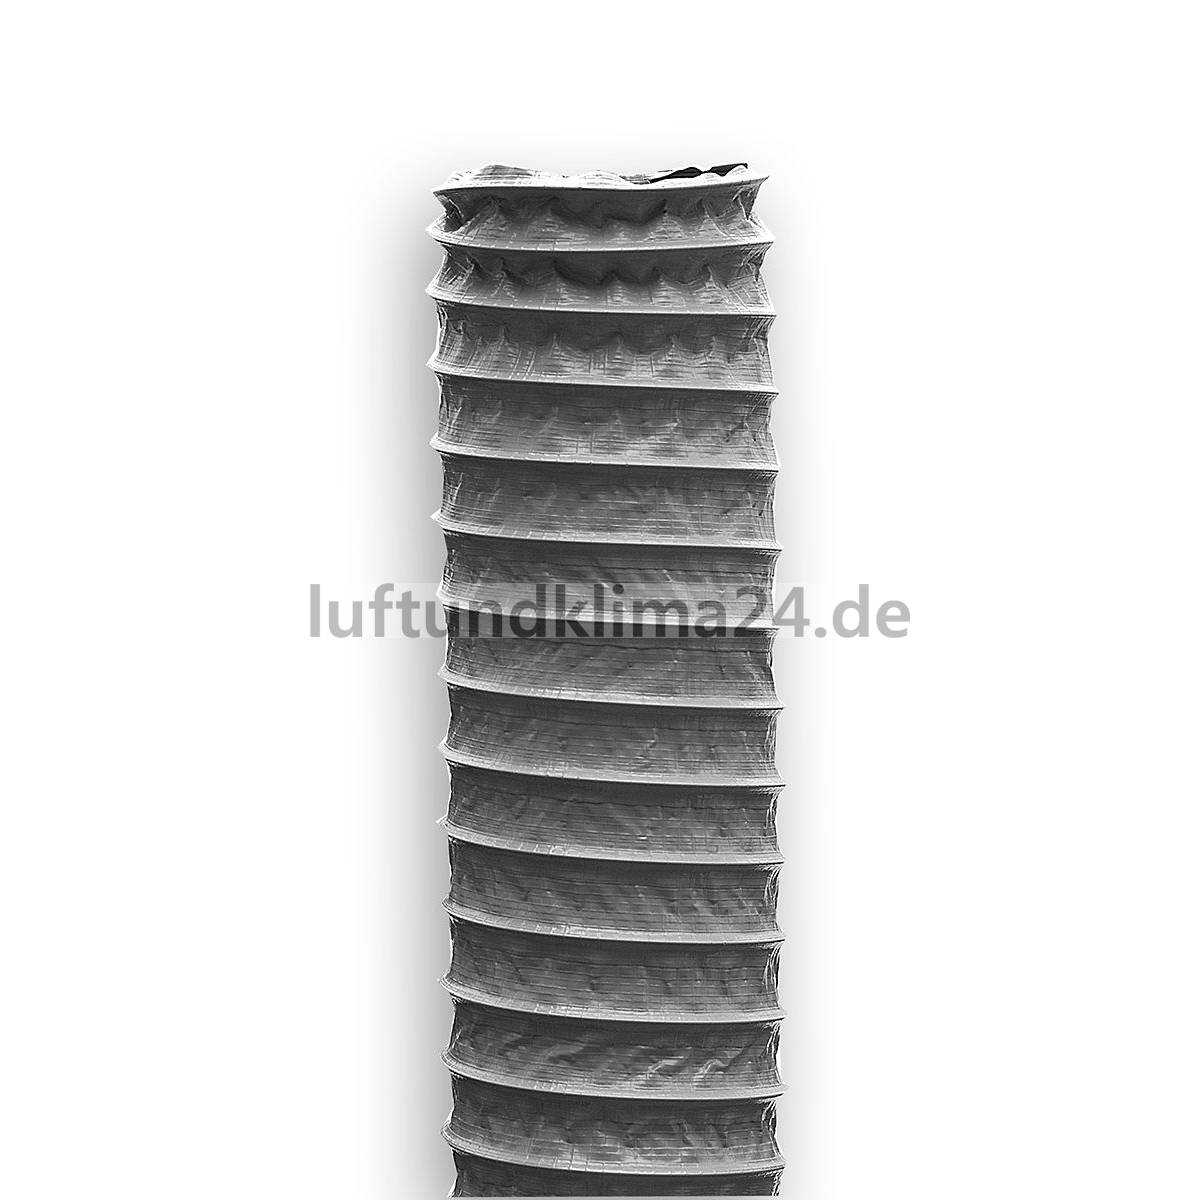 https://www.luftundklima24.de/media/image/product/2934/lg/10-meter-kunststoffschlauch-mit-drahtspirale-grau-lueftungsschlauch.jpg